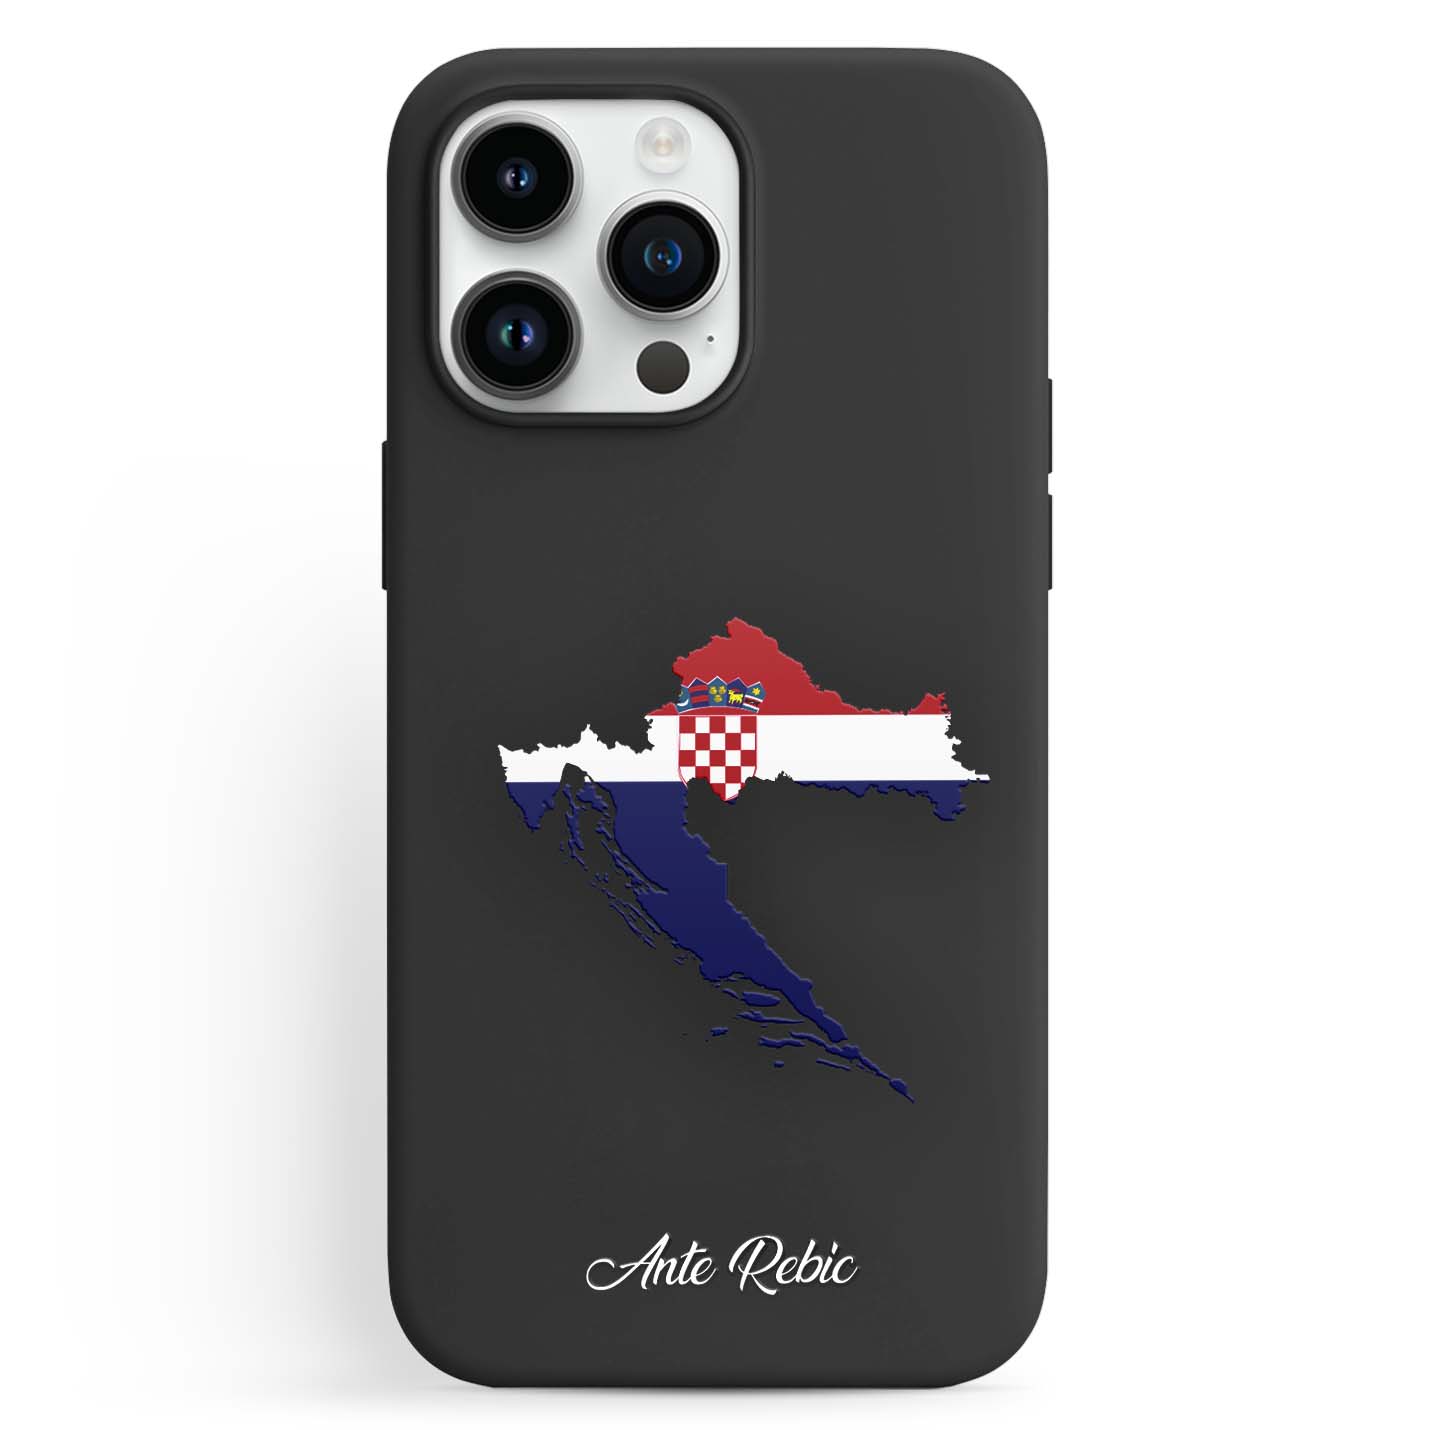 Handyhüllen mit Flagge - Kroatien - 1instaphone